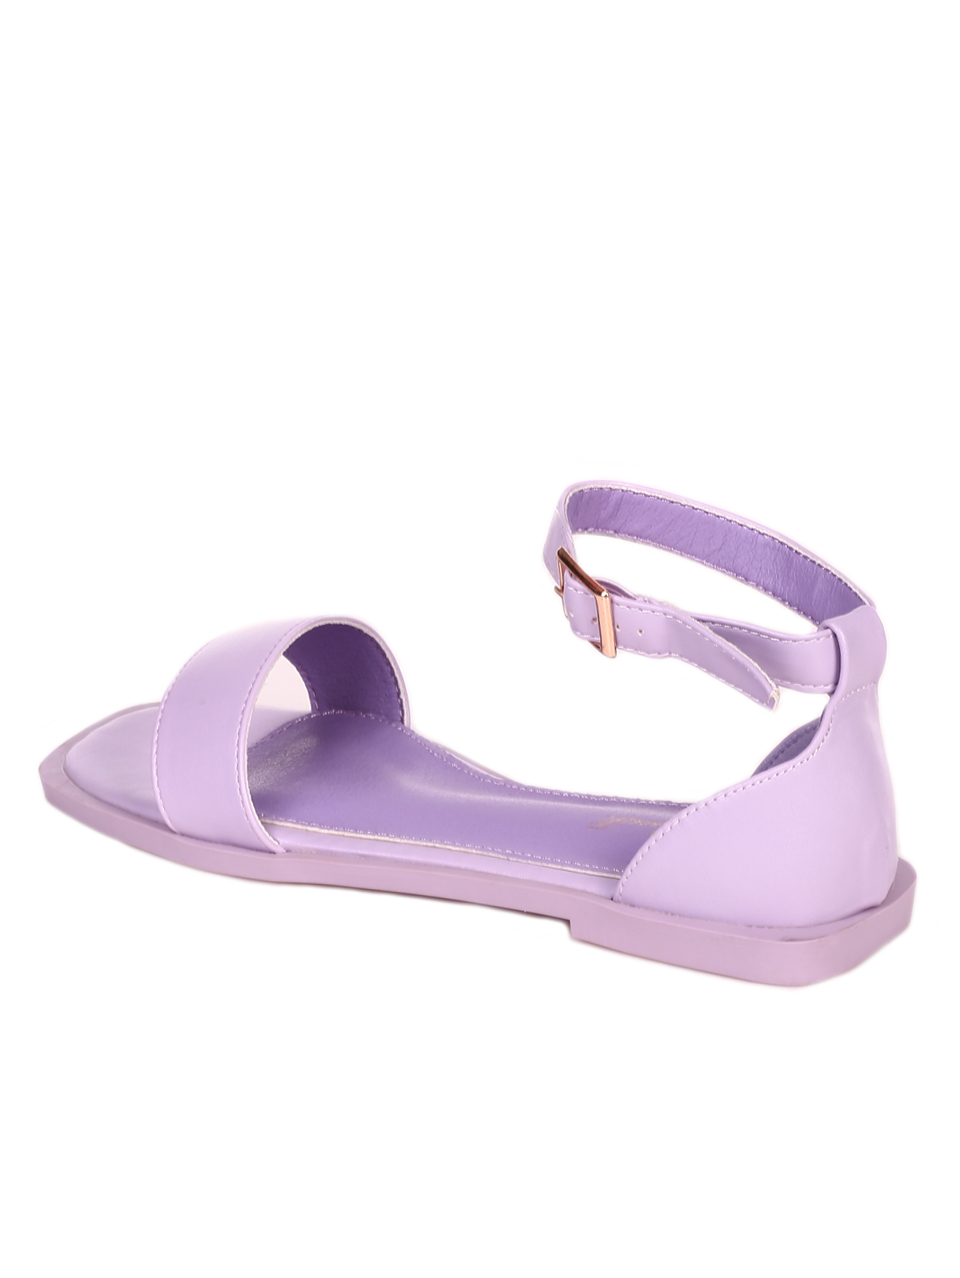 Ежедневни дамски равни сандали в лилаво 4M-21067 lt.purple